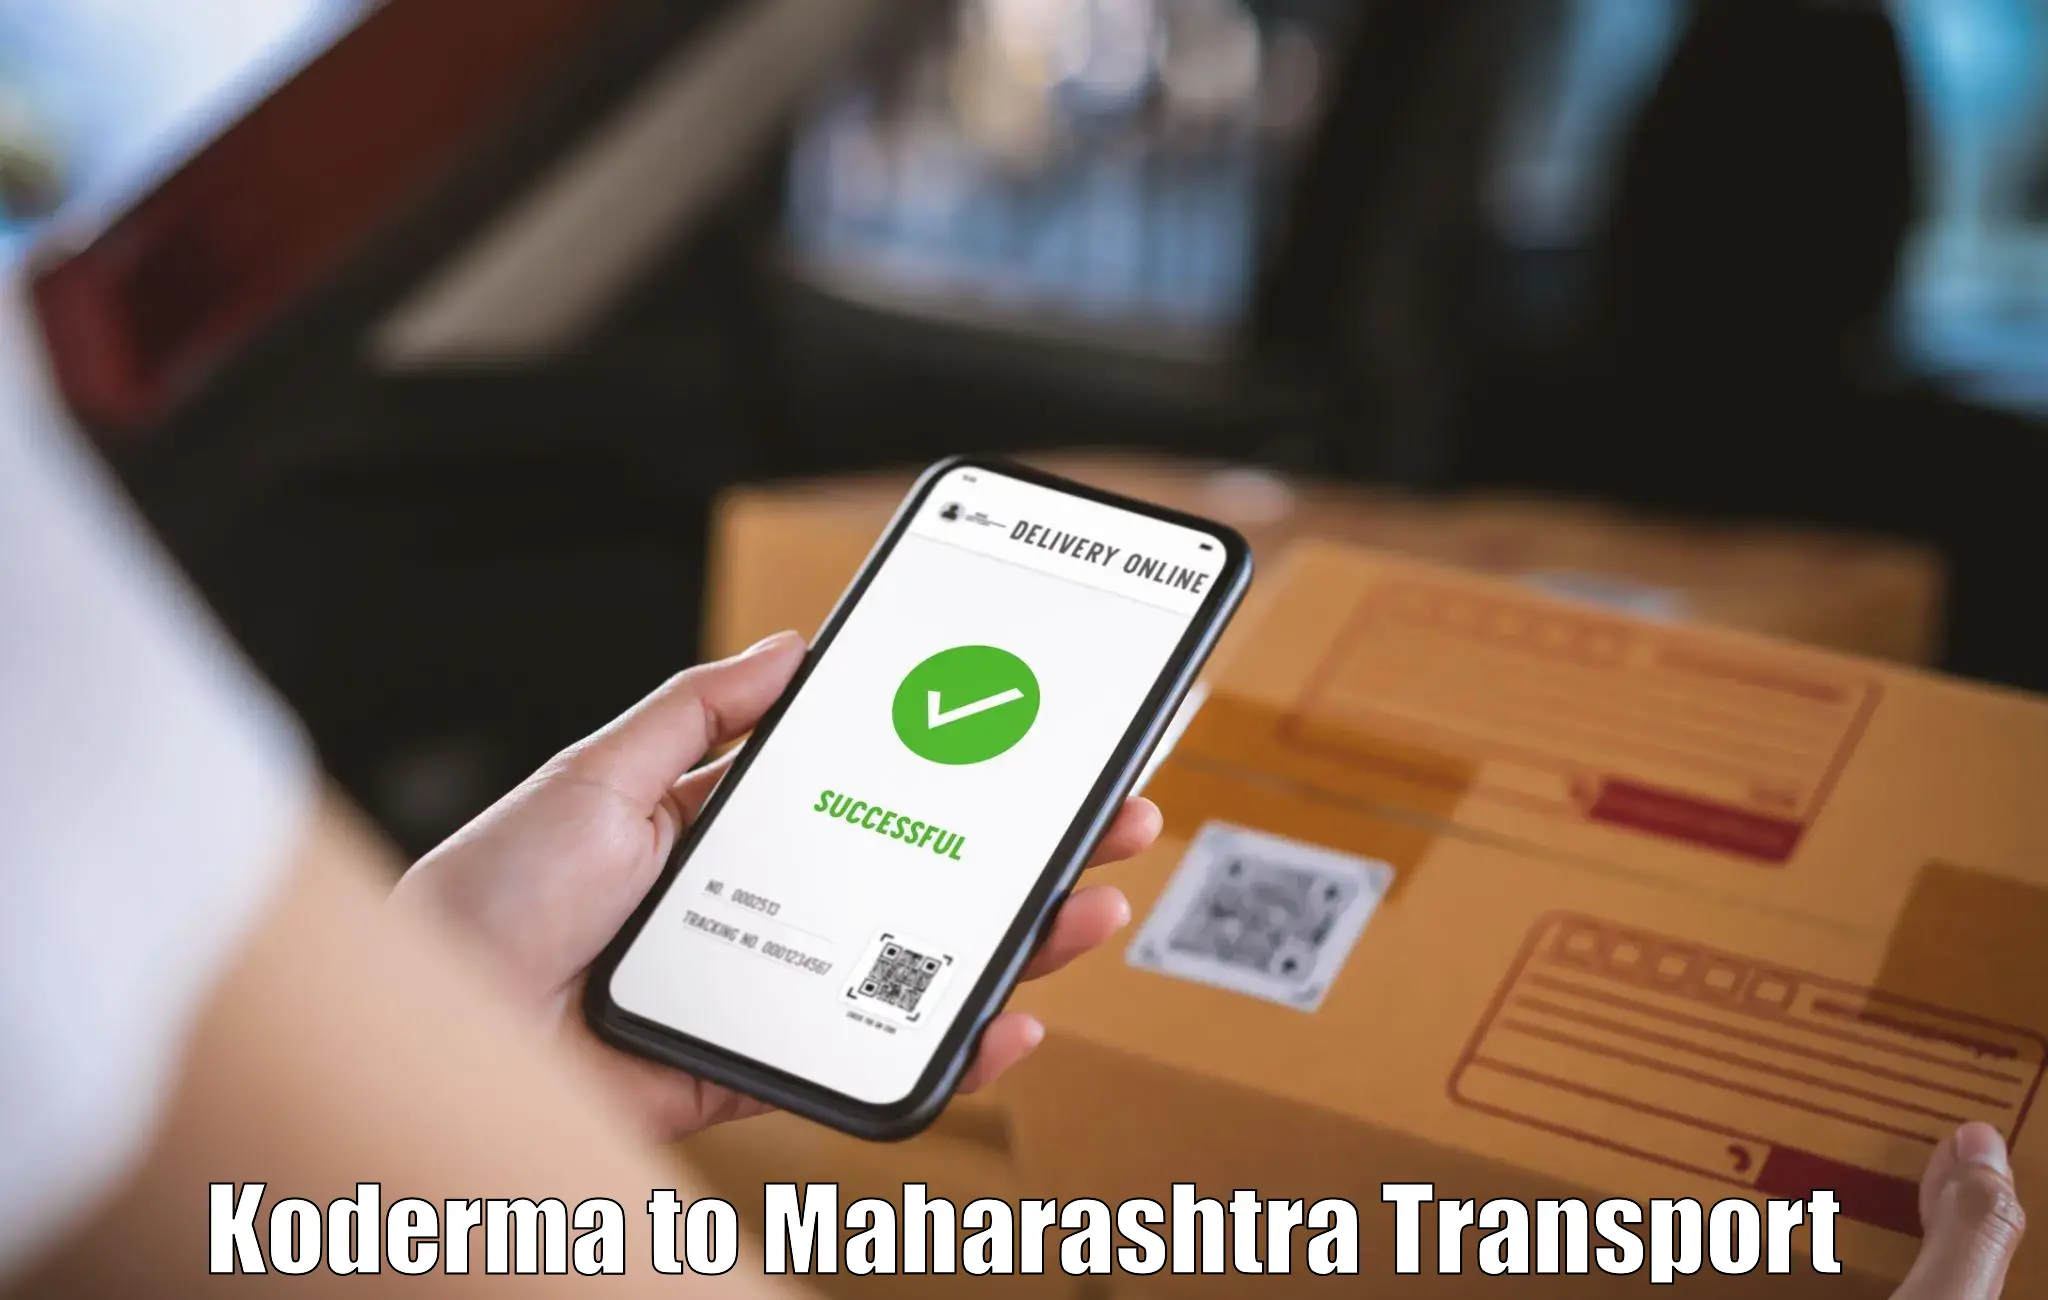 Inland transportation services Koderma to Maharashtra